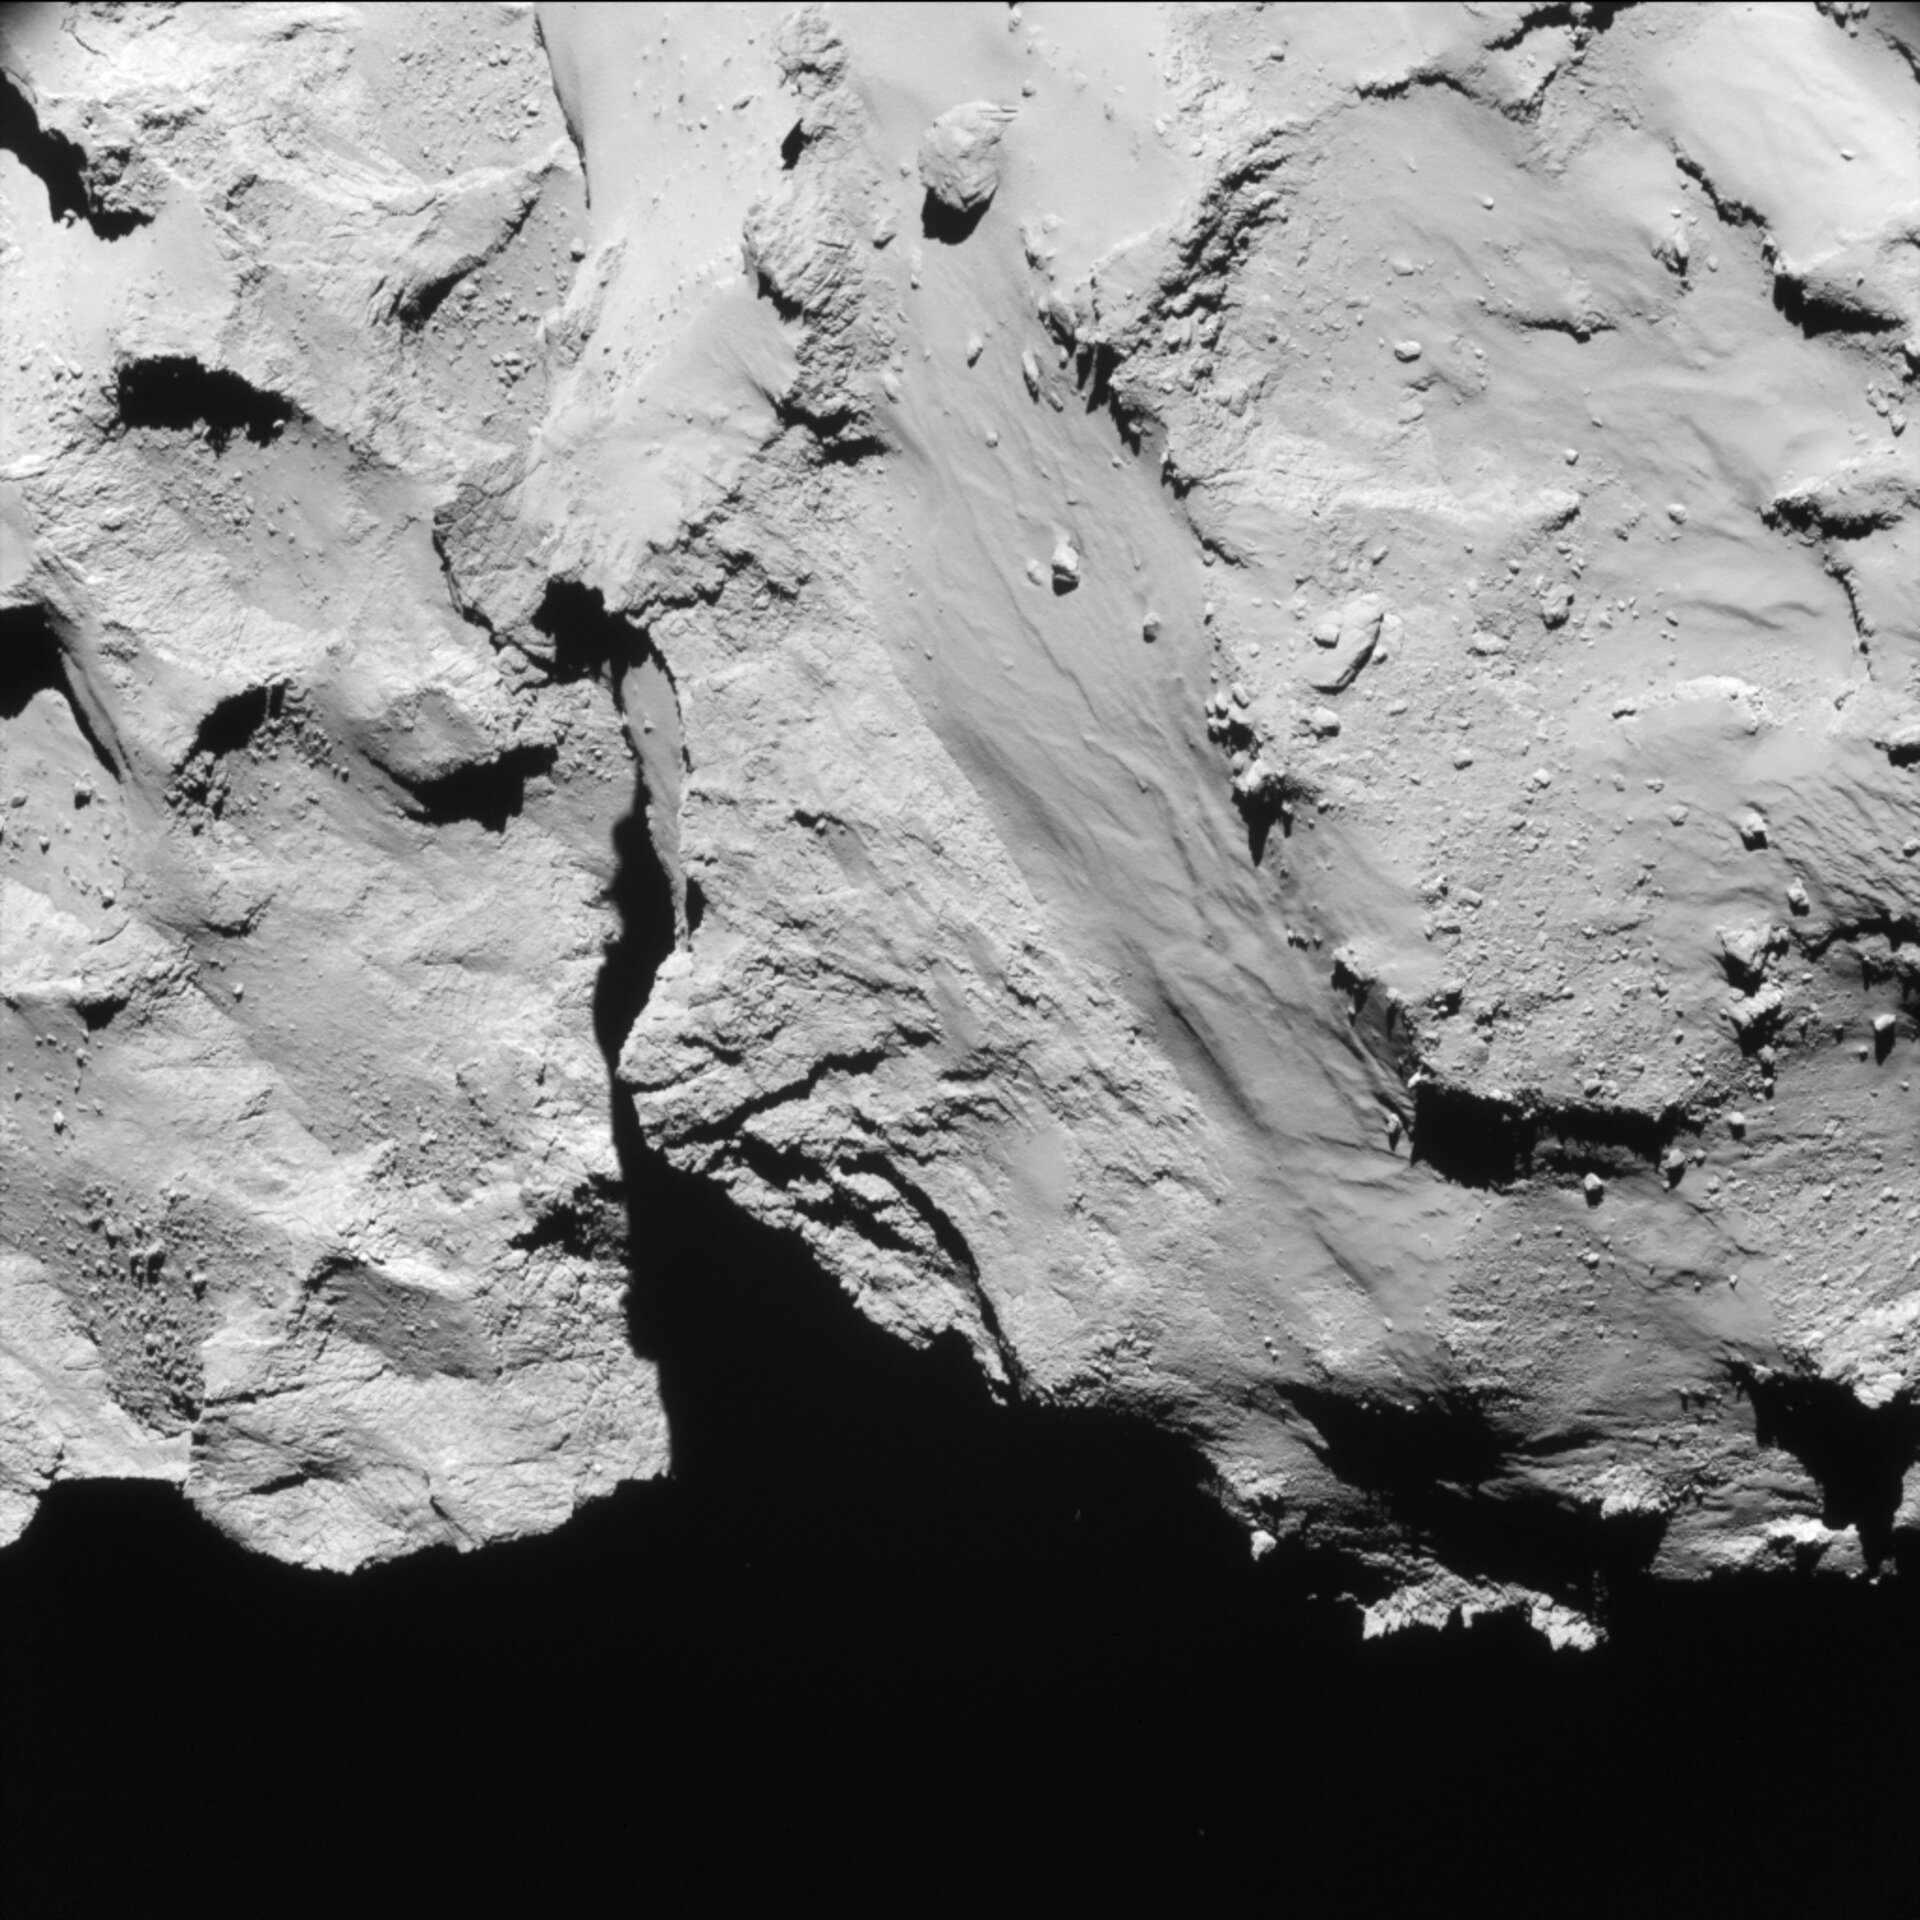 Year at a comet, November 2014